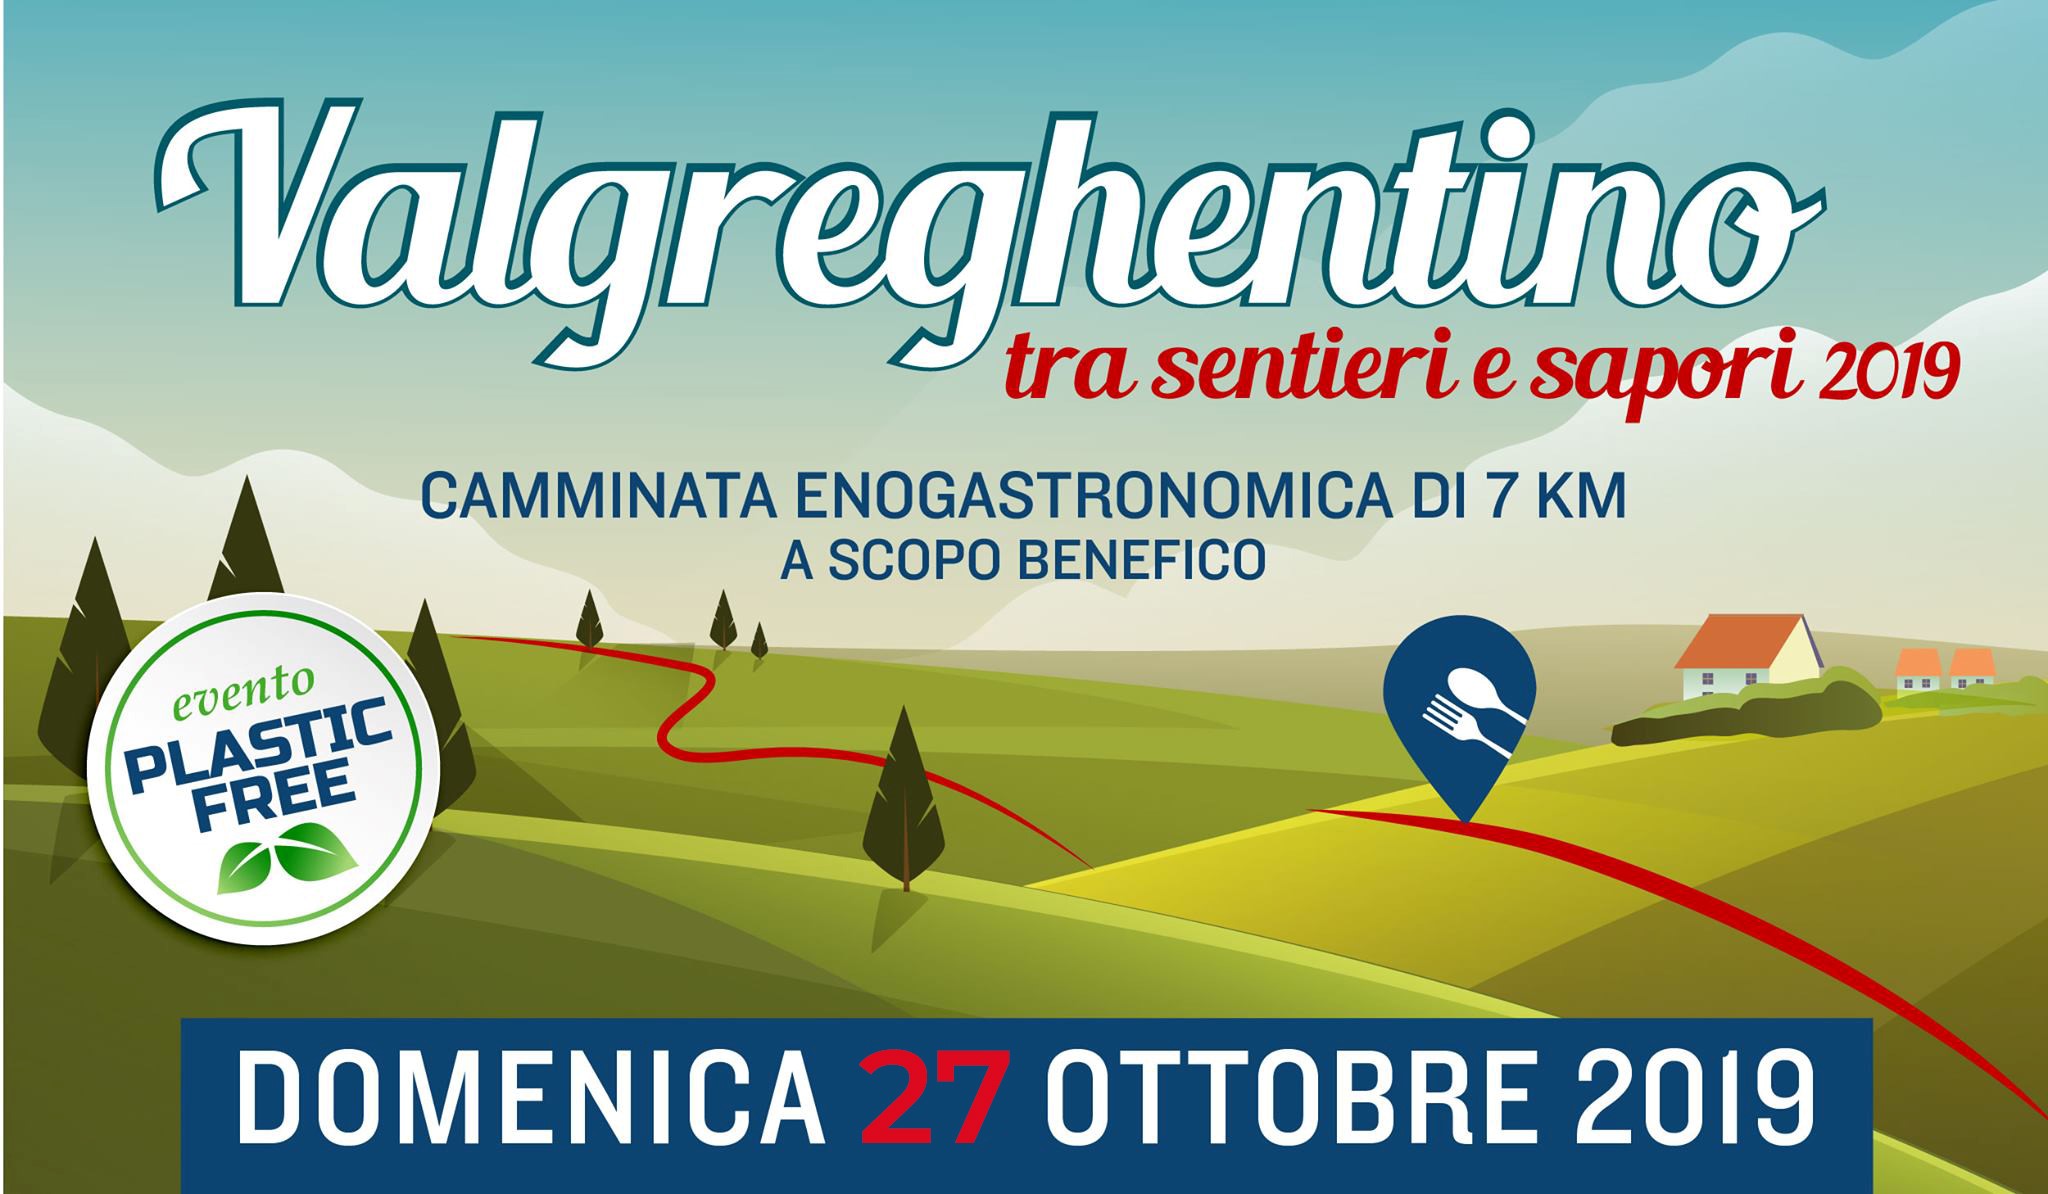 Domenica 27 ottobre 2019 Valgreghentino tra sentieri e sapori, camminata enogastronomica. Herba Monstrum, birre artigianali alla spina.